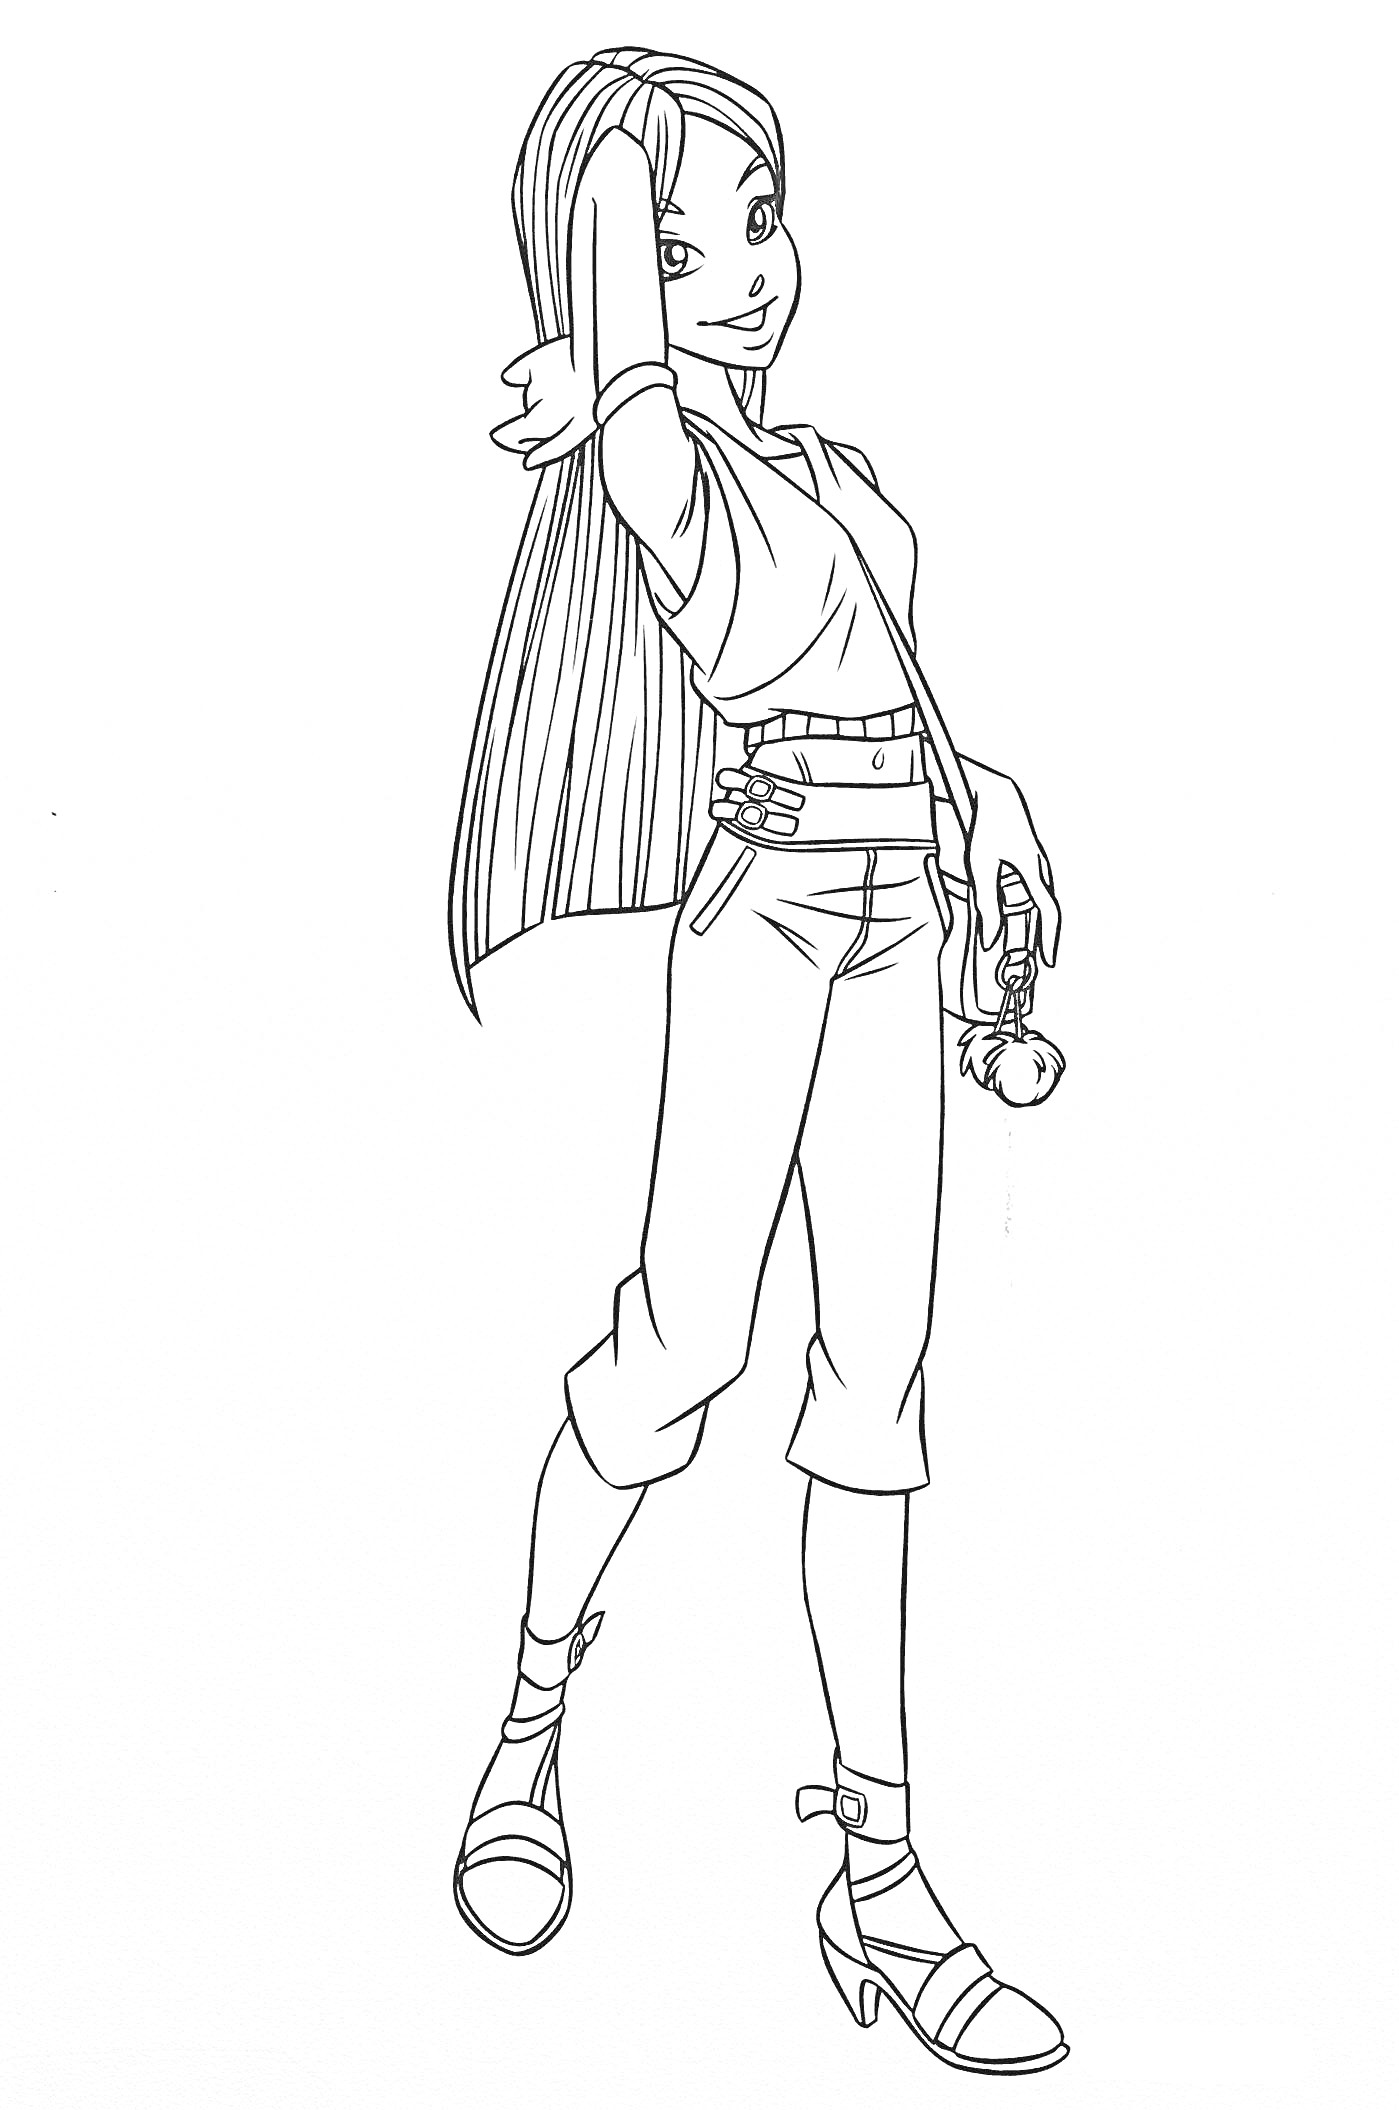 Девушка-волшебница с длинными волосами, одета в рубашку, джинсы и босоножки, держит магический предмет в руке